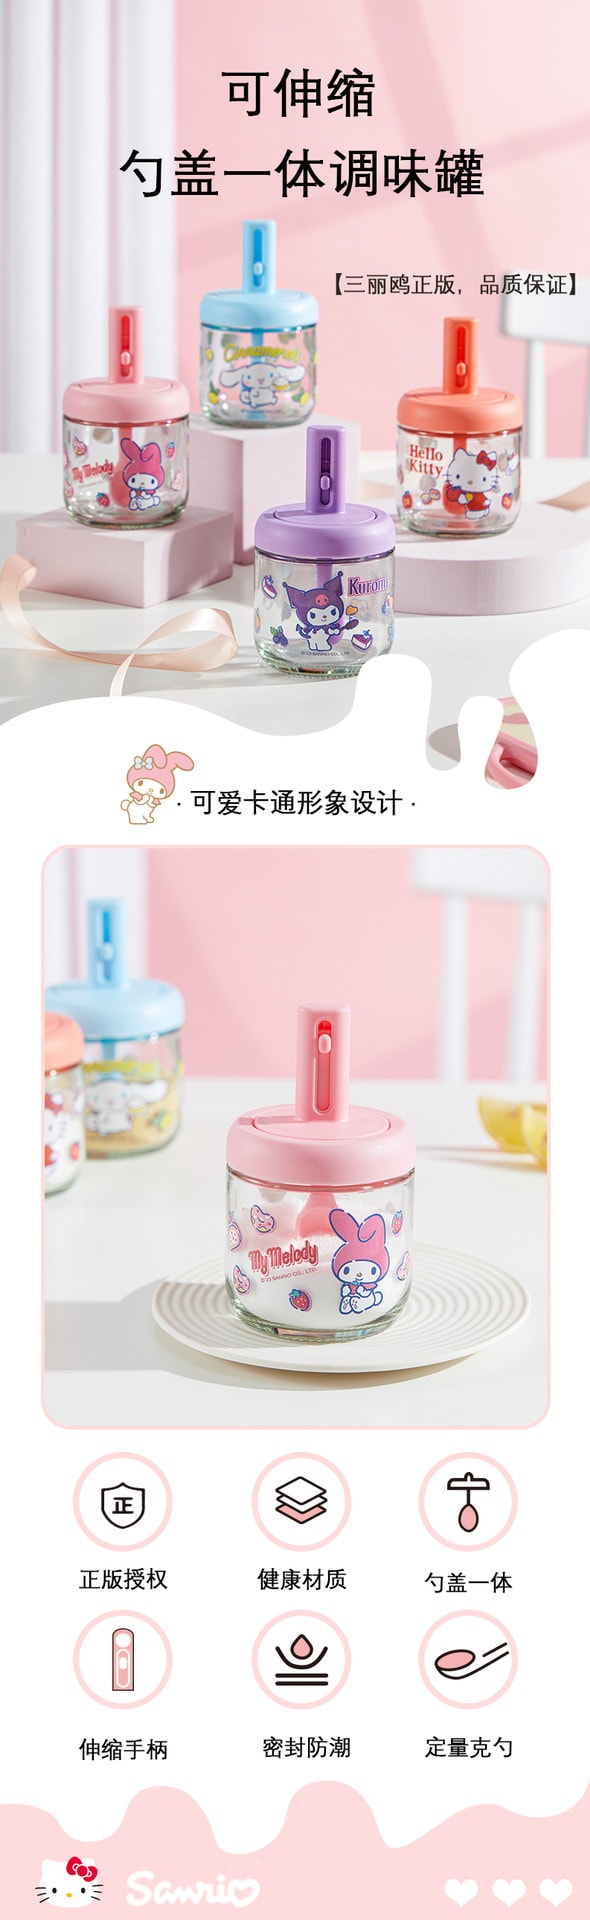 【中國】FOXTAIL三麗鷗玻璃調味罐 調味瓶 可愛卡通調味罐 -凱蒂貓 Hello Kitty 1個丨*預計到達時間3-4週